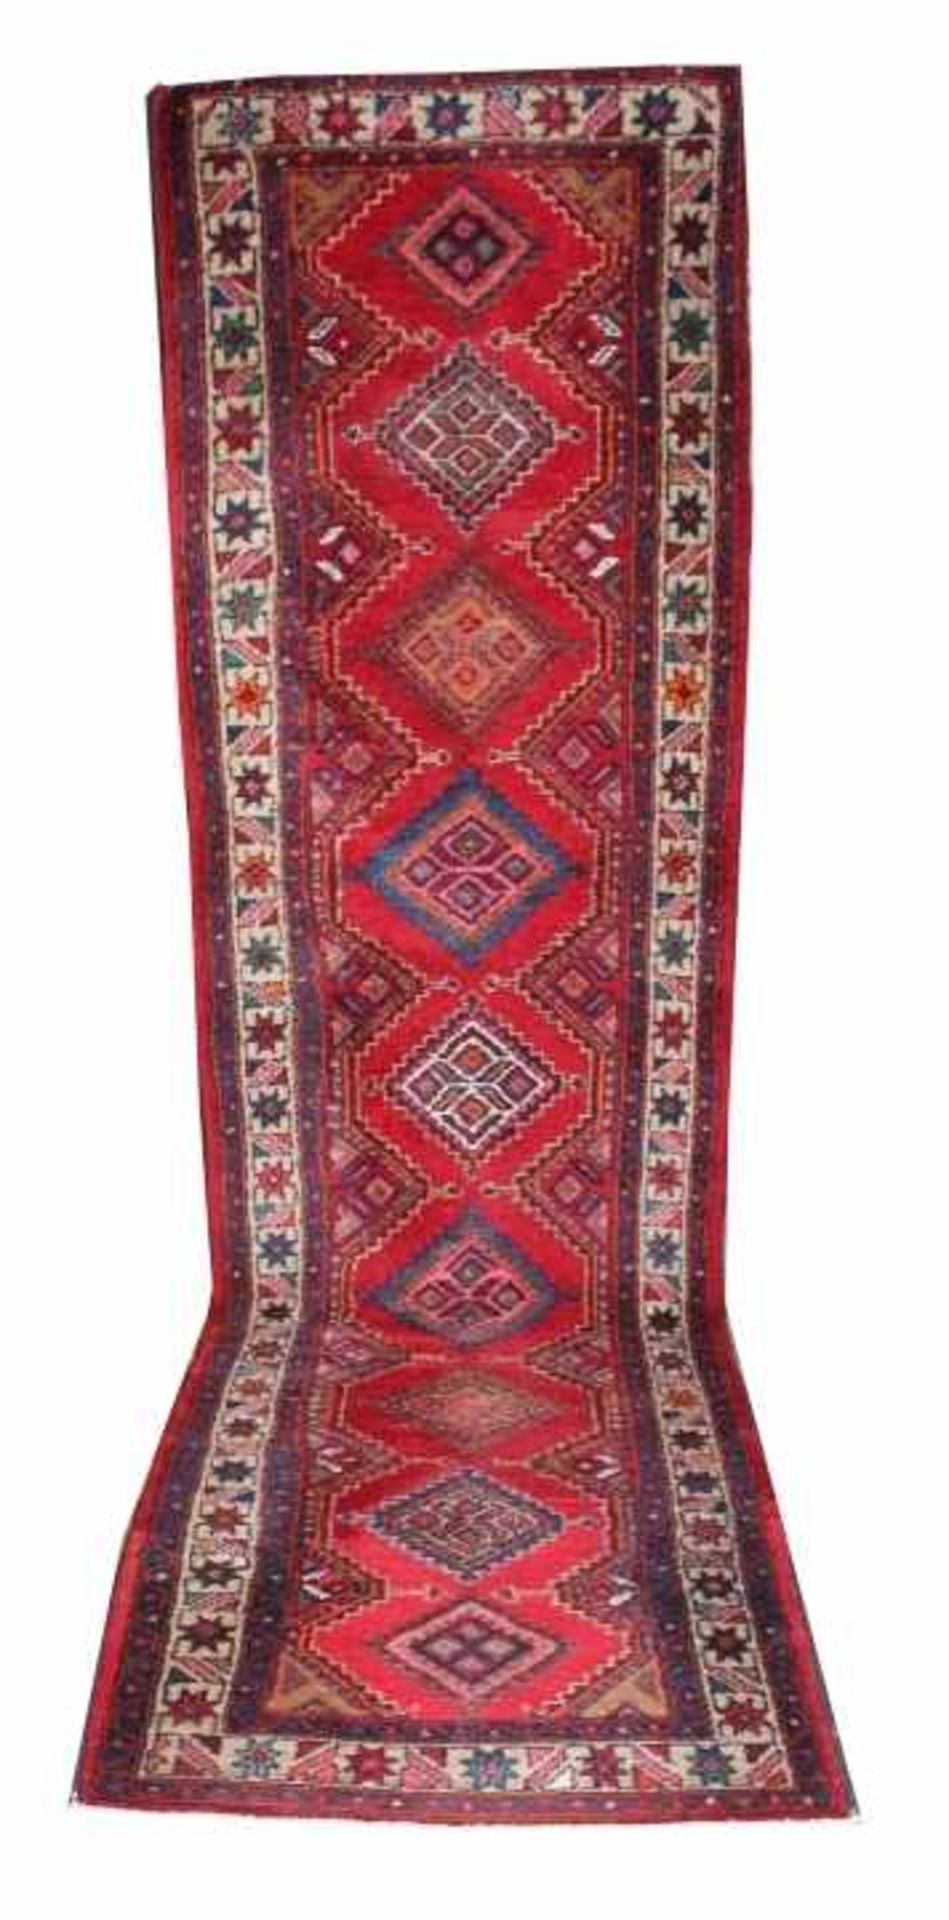 Orientteppich - Naharand als Galerie, Persien um 1960, rosa/braun/rote und blaue Farben auf rotem